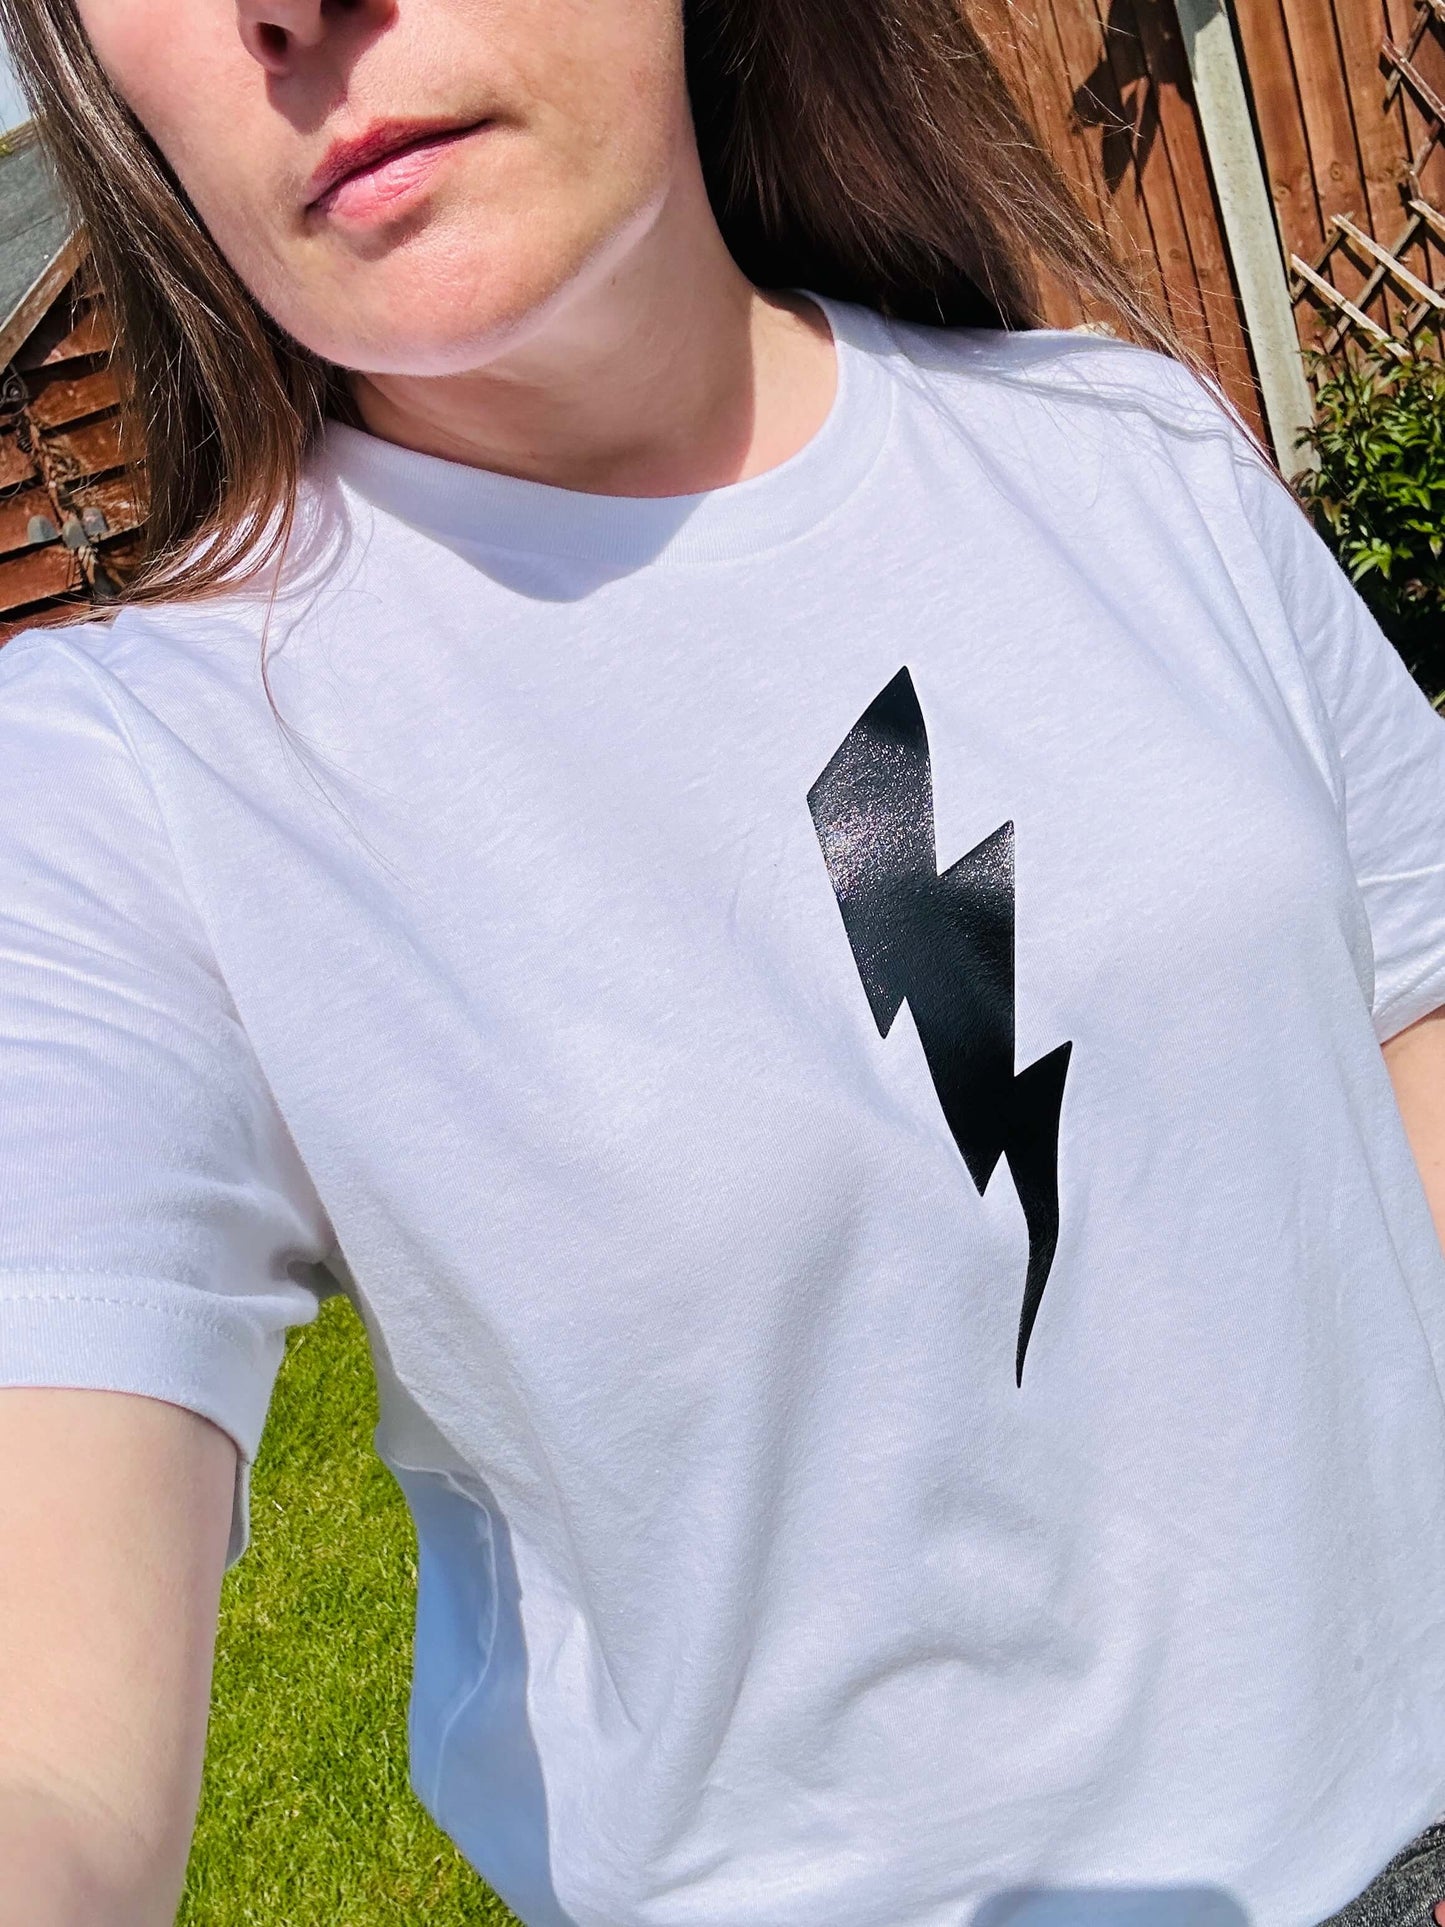 Unisex white T-shirt with black lightning bolt design